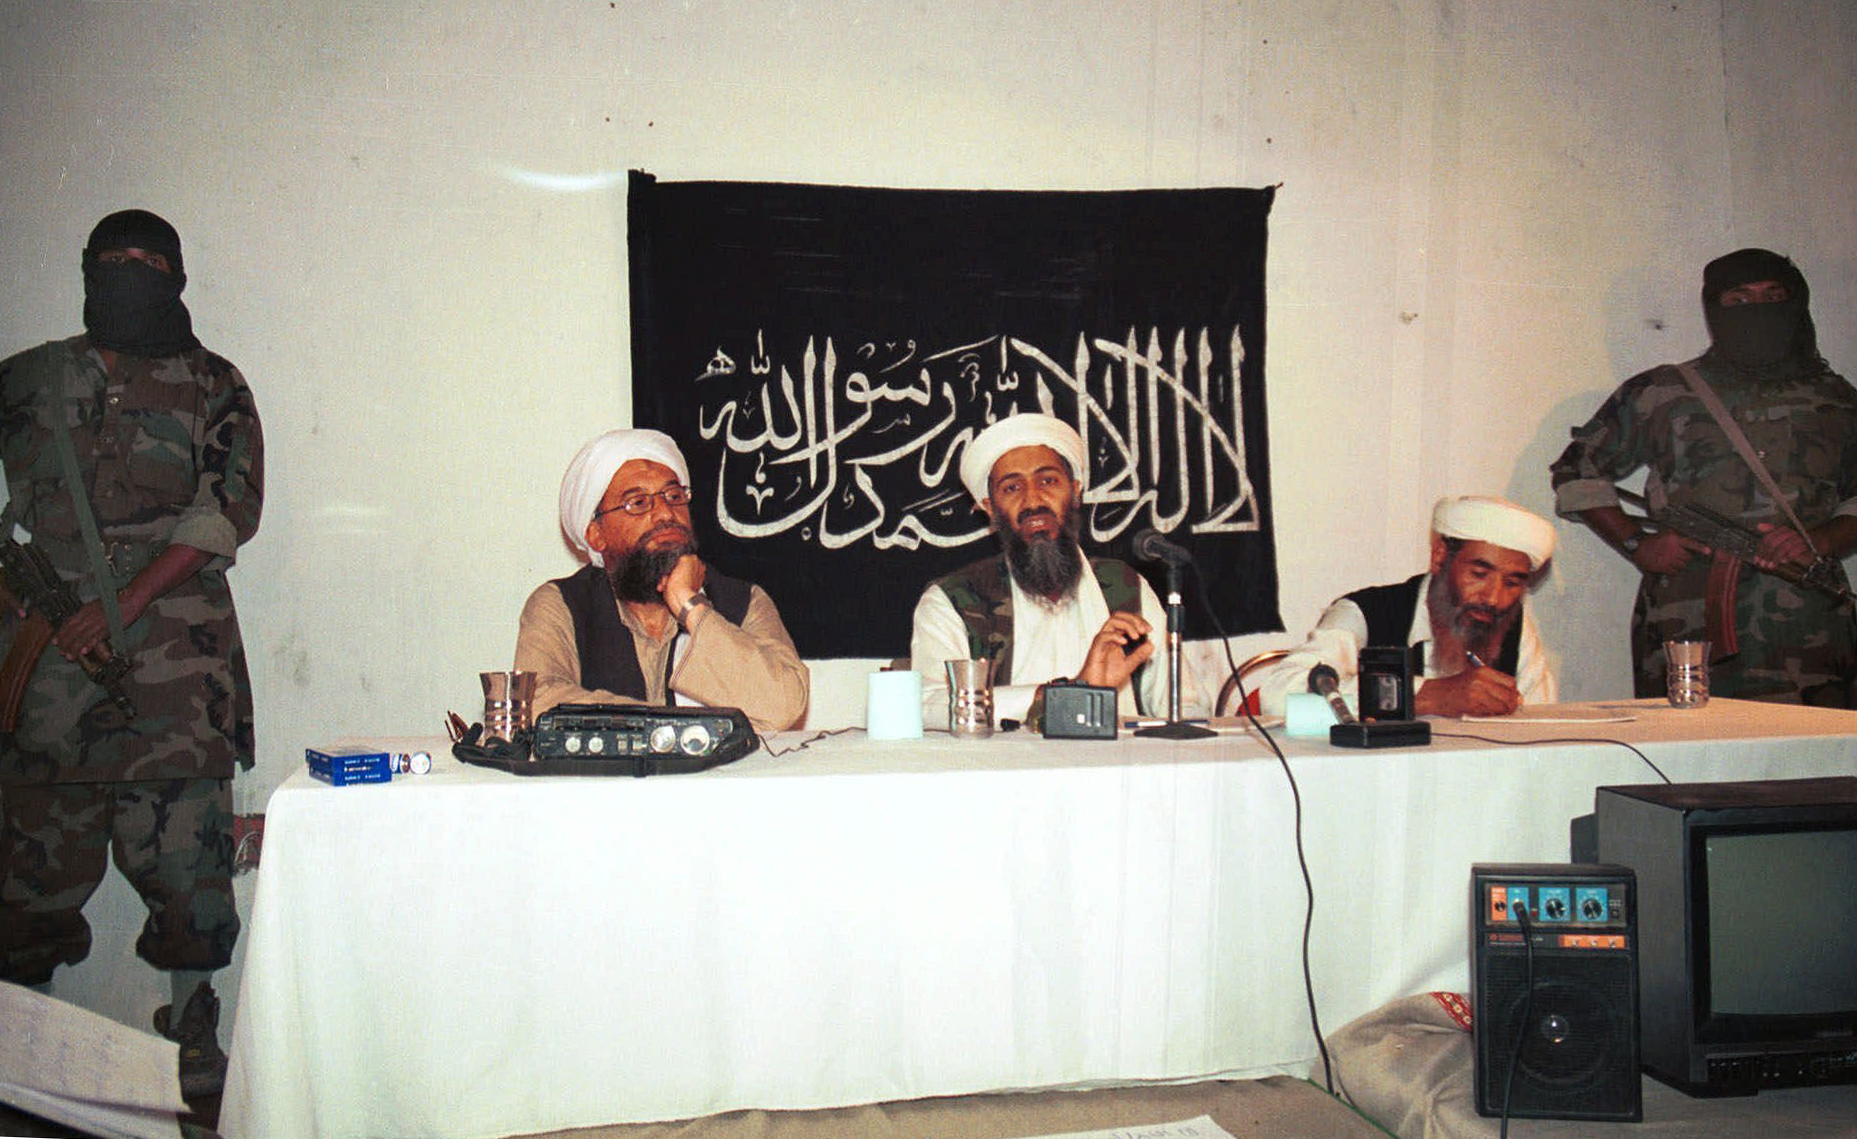 Peter Bergen, biógrafo del fallecido líder de Al Qaeda: “Osama bin Laden  cambió la historia” - La Tercera